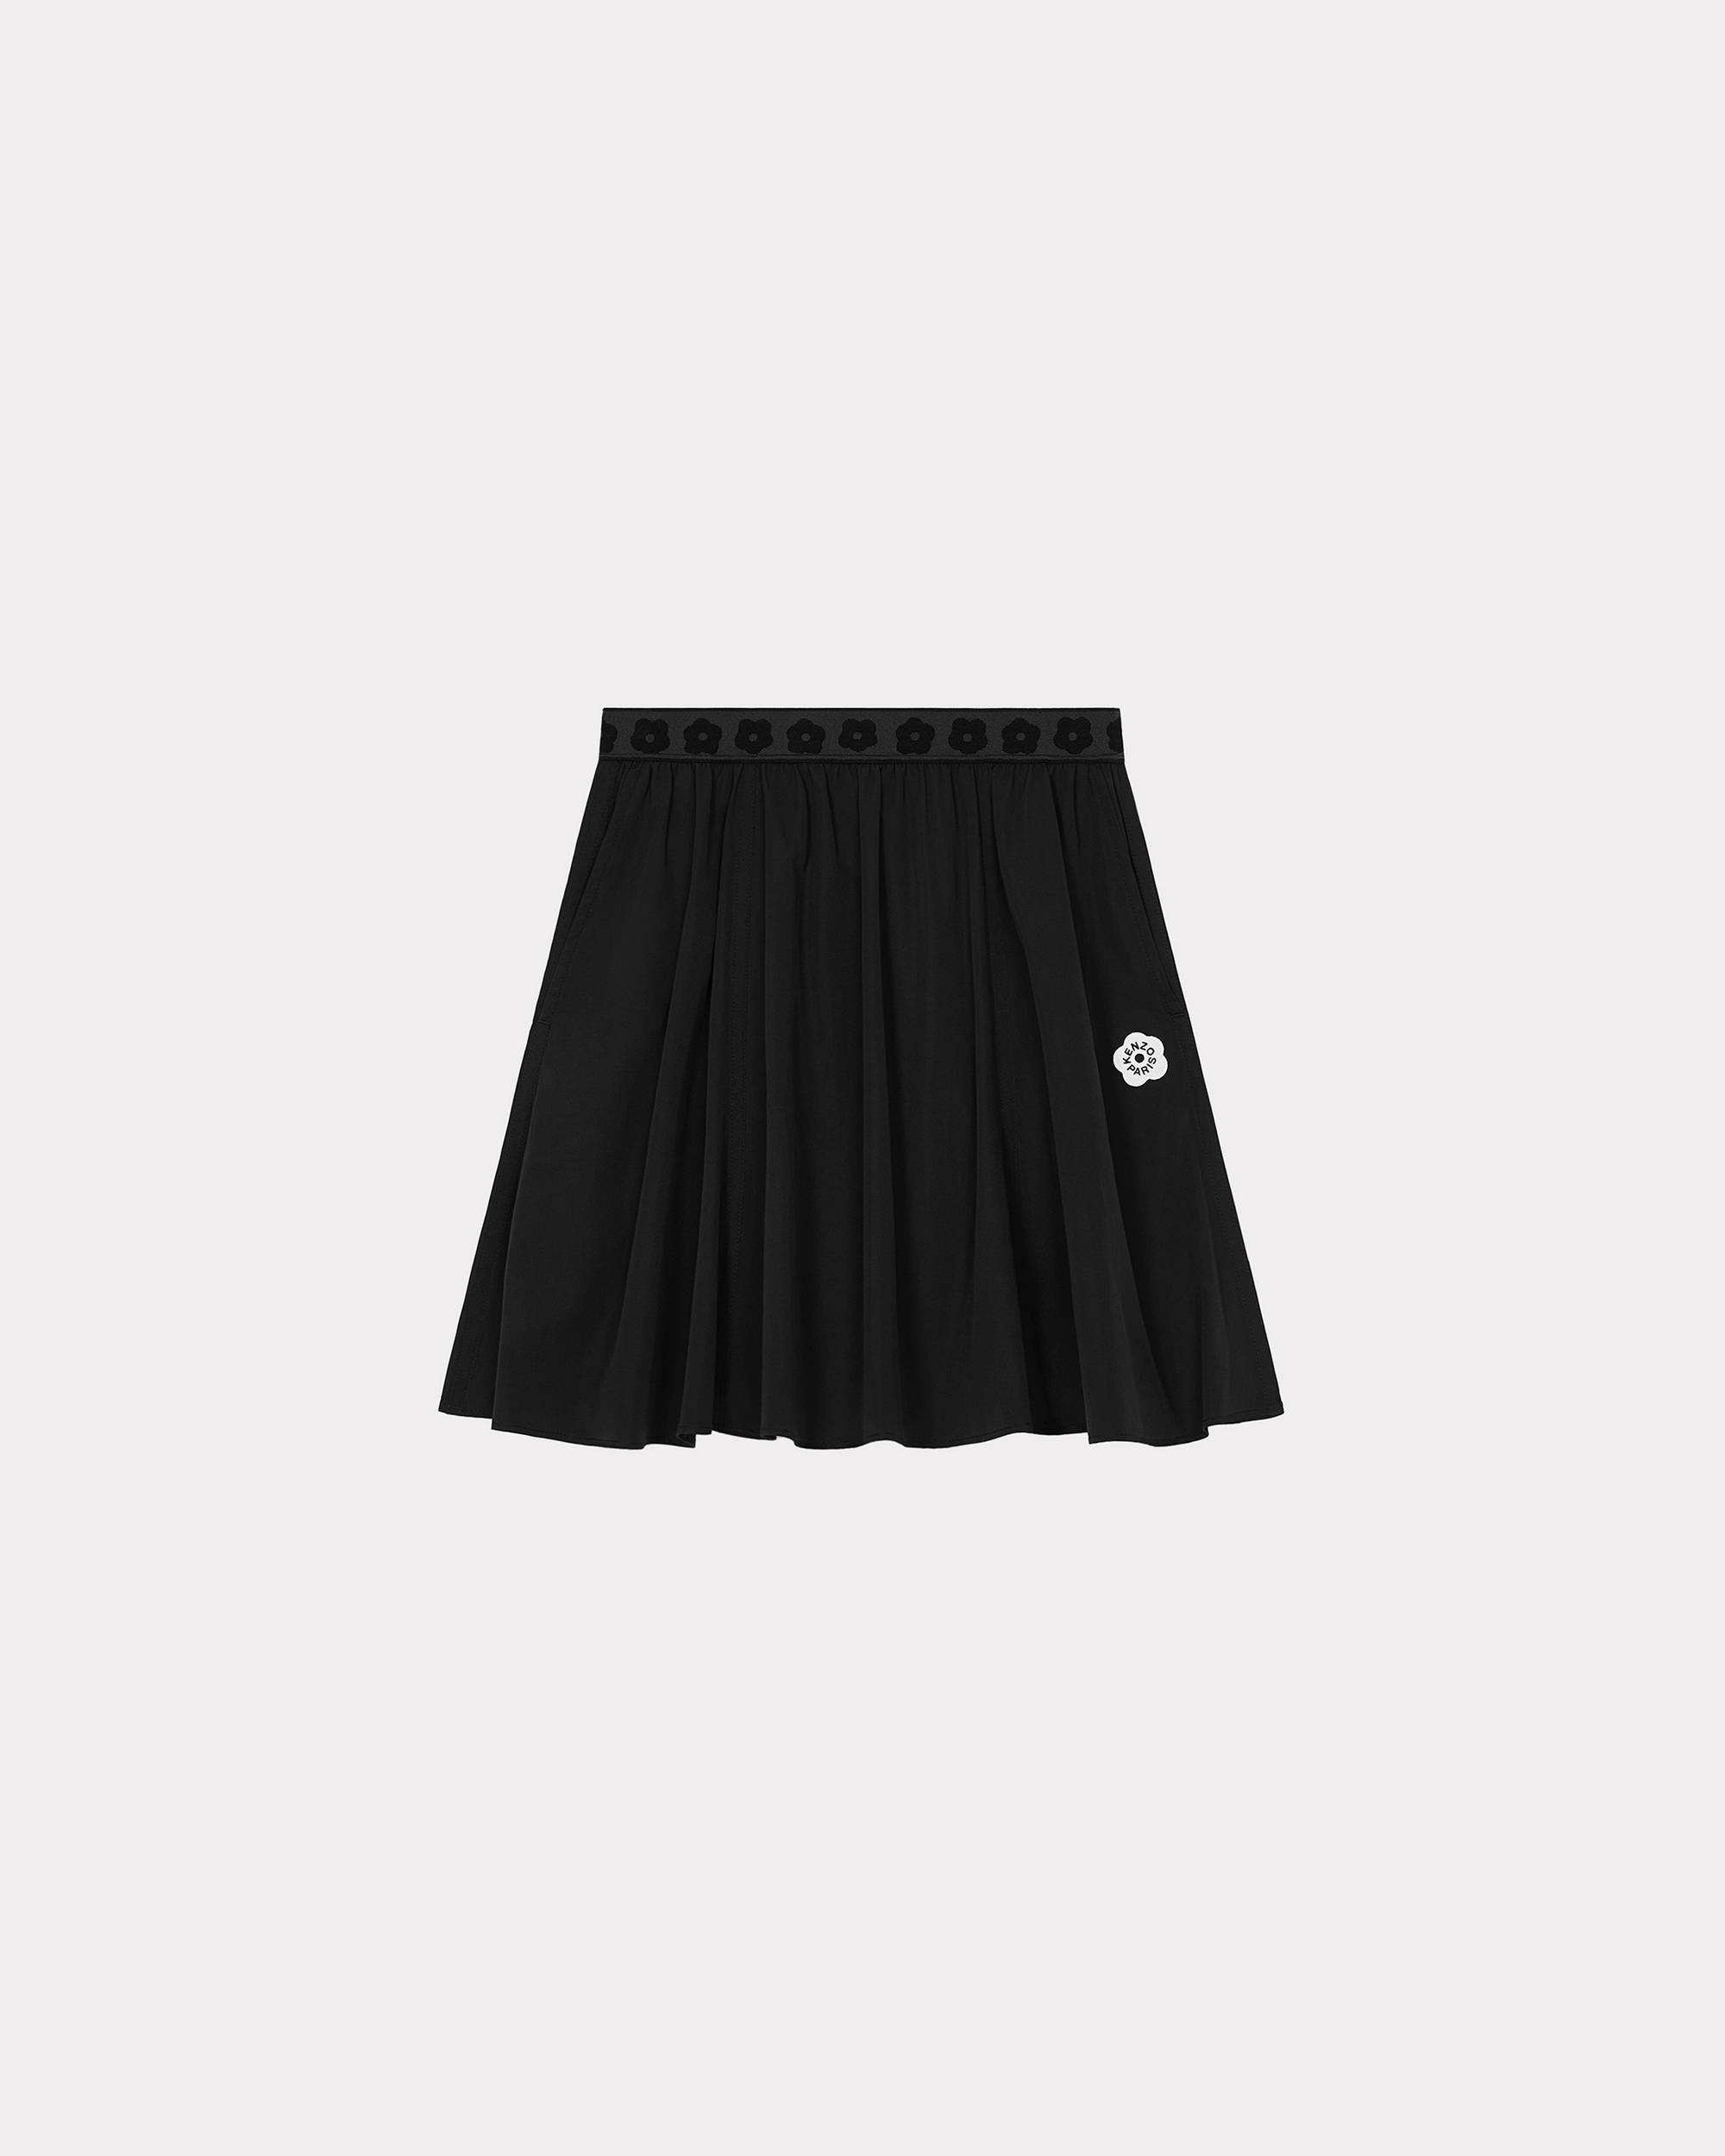 'Boke 2.0' short skirt - 1